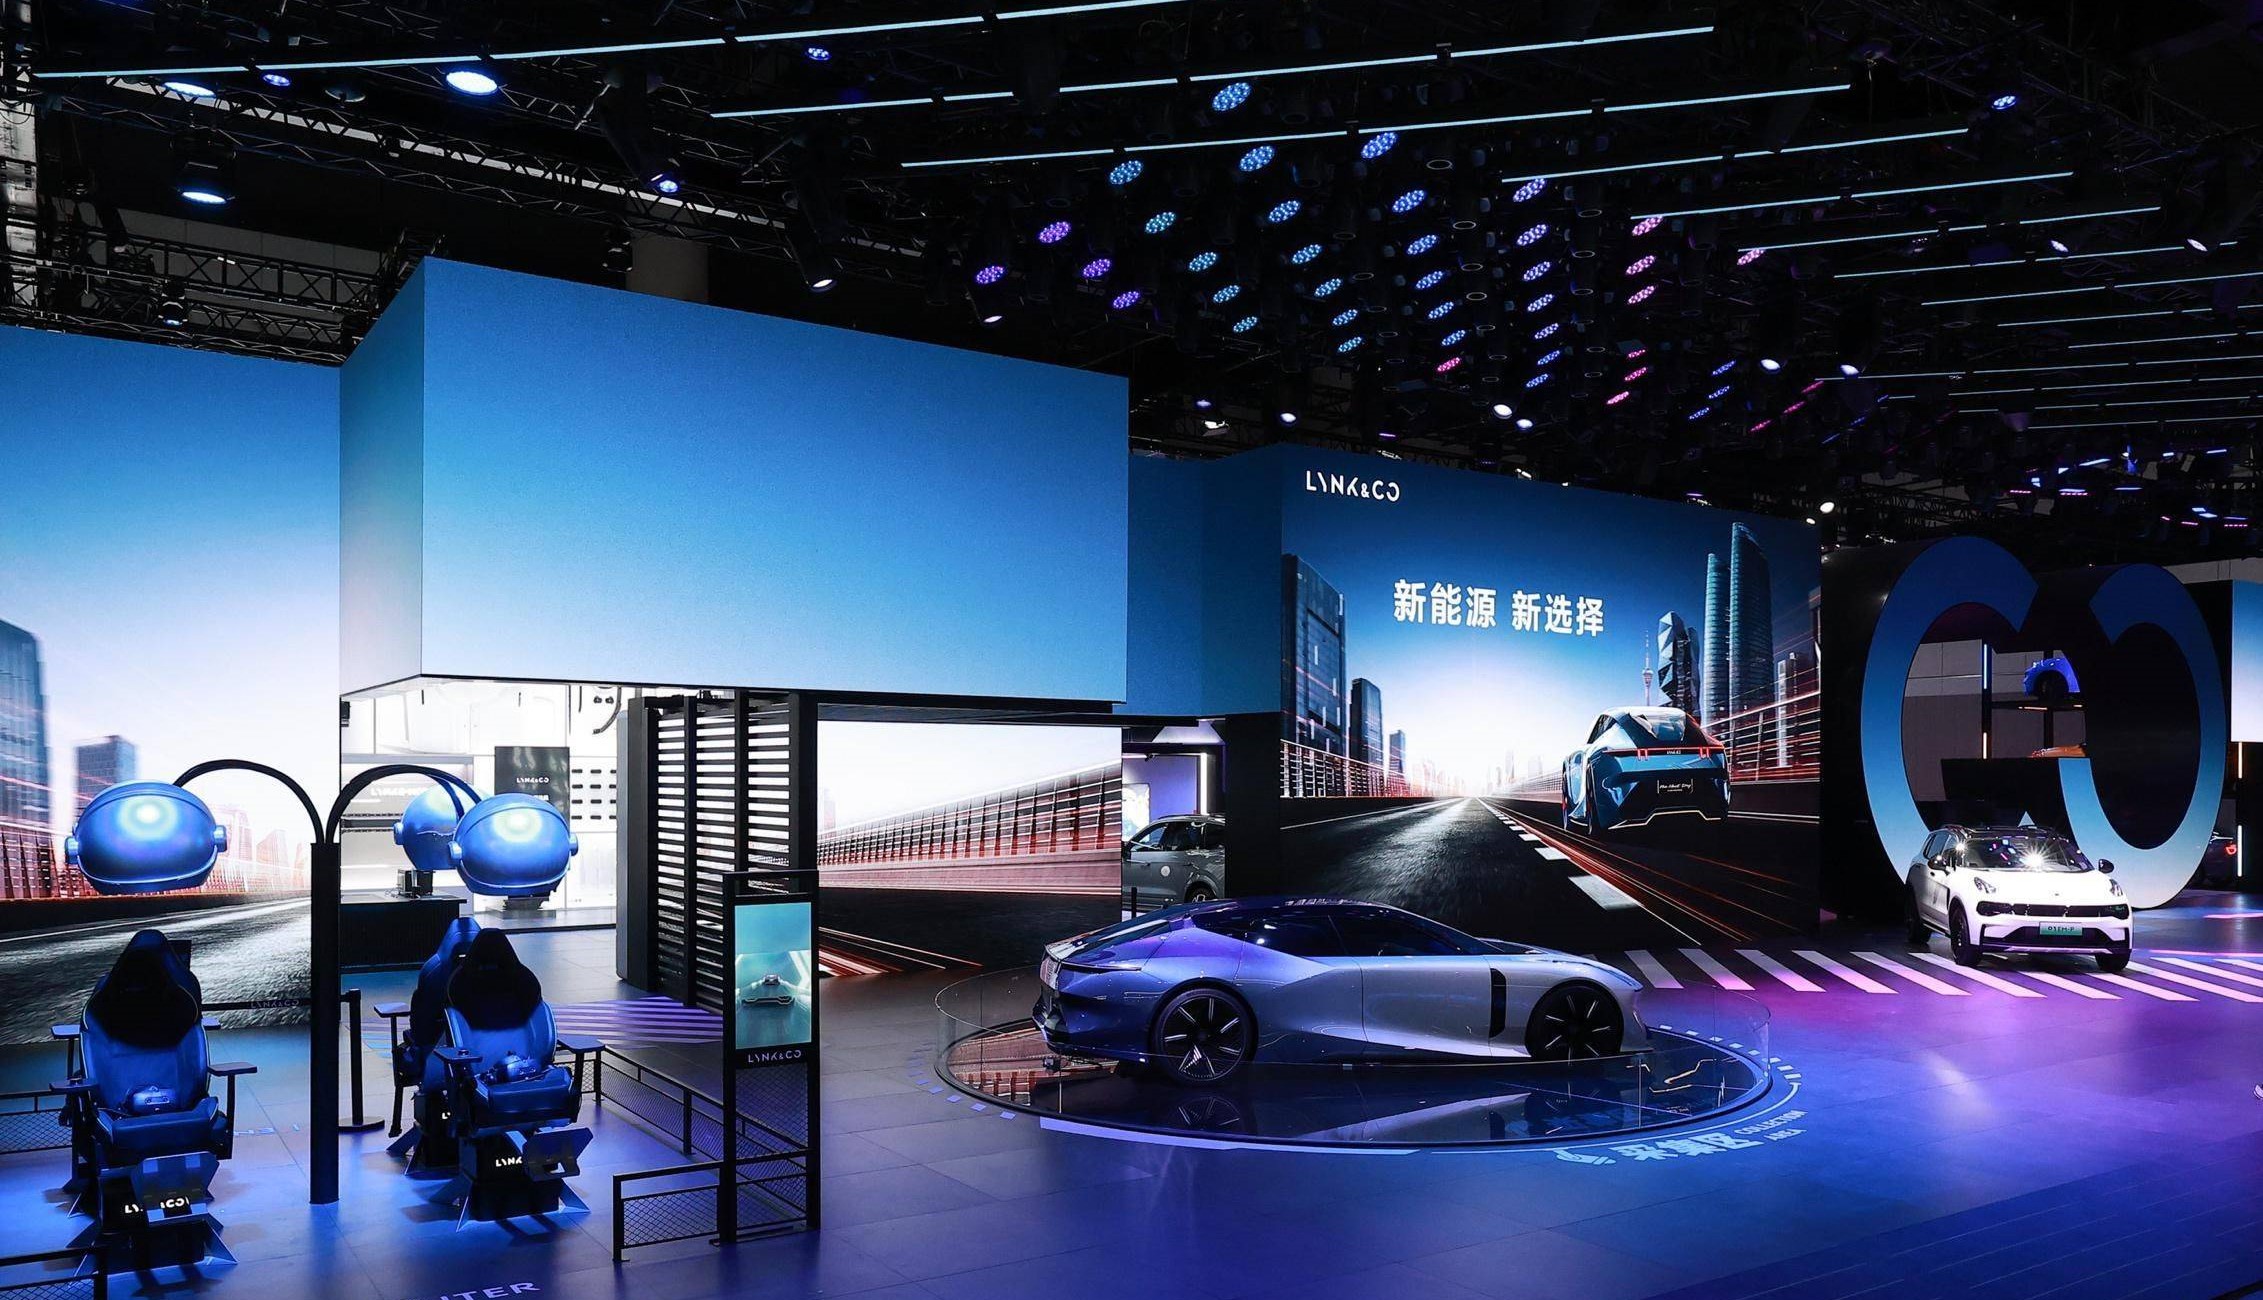 这是一张车展的照片，展示了几辆现代汽车，有光影效果，台前有座椅，背景是大屏幕和炫酷的展台设计。